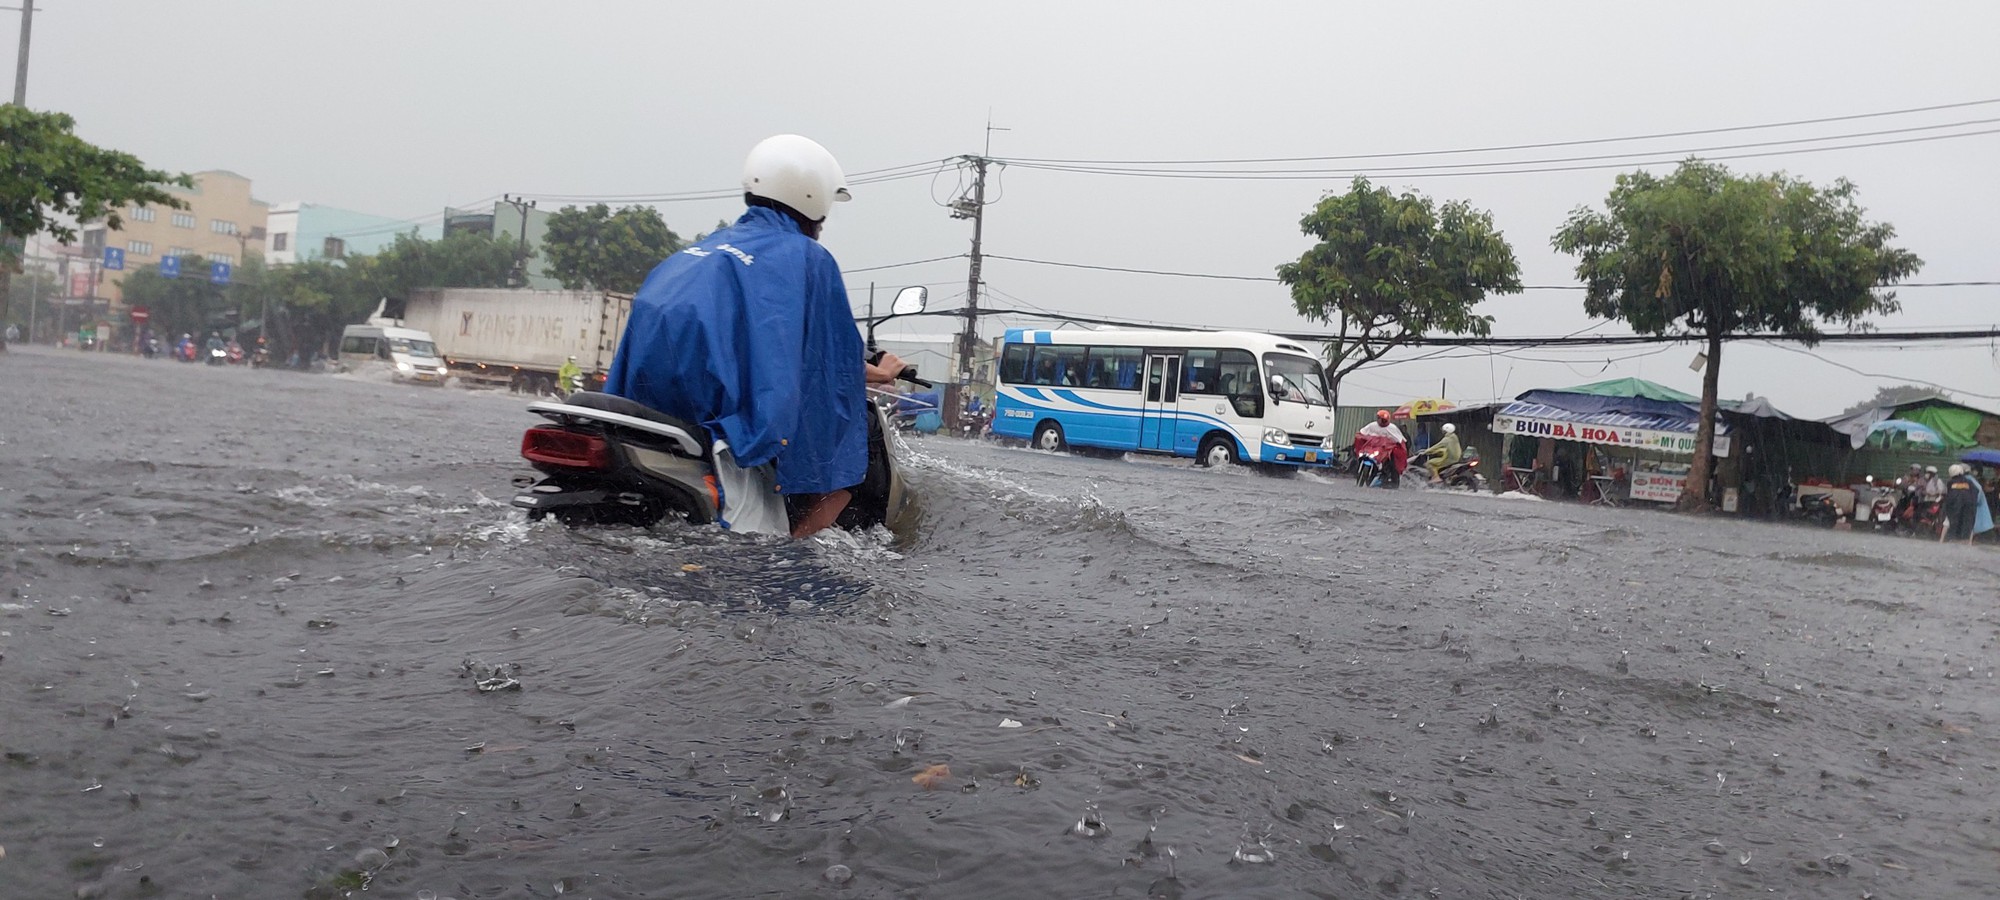 Đường phố Đà Nẵng lại ngập sau mưa lớn, ô tô, xe máy bì bõm lội nước - Ảnh 4.